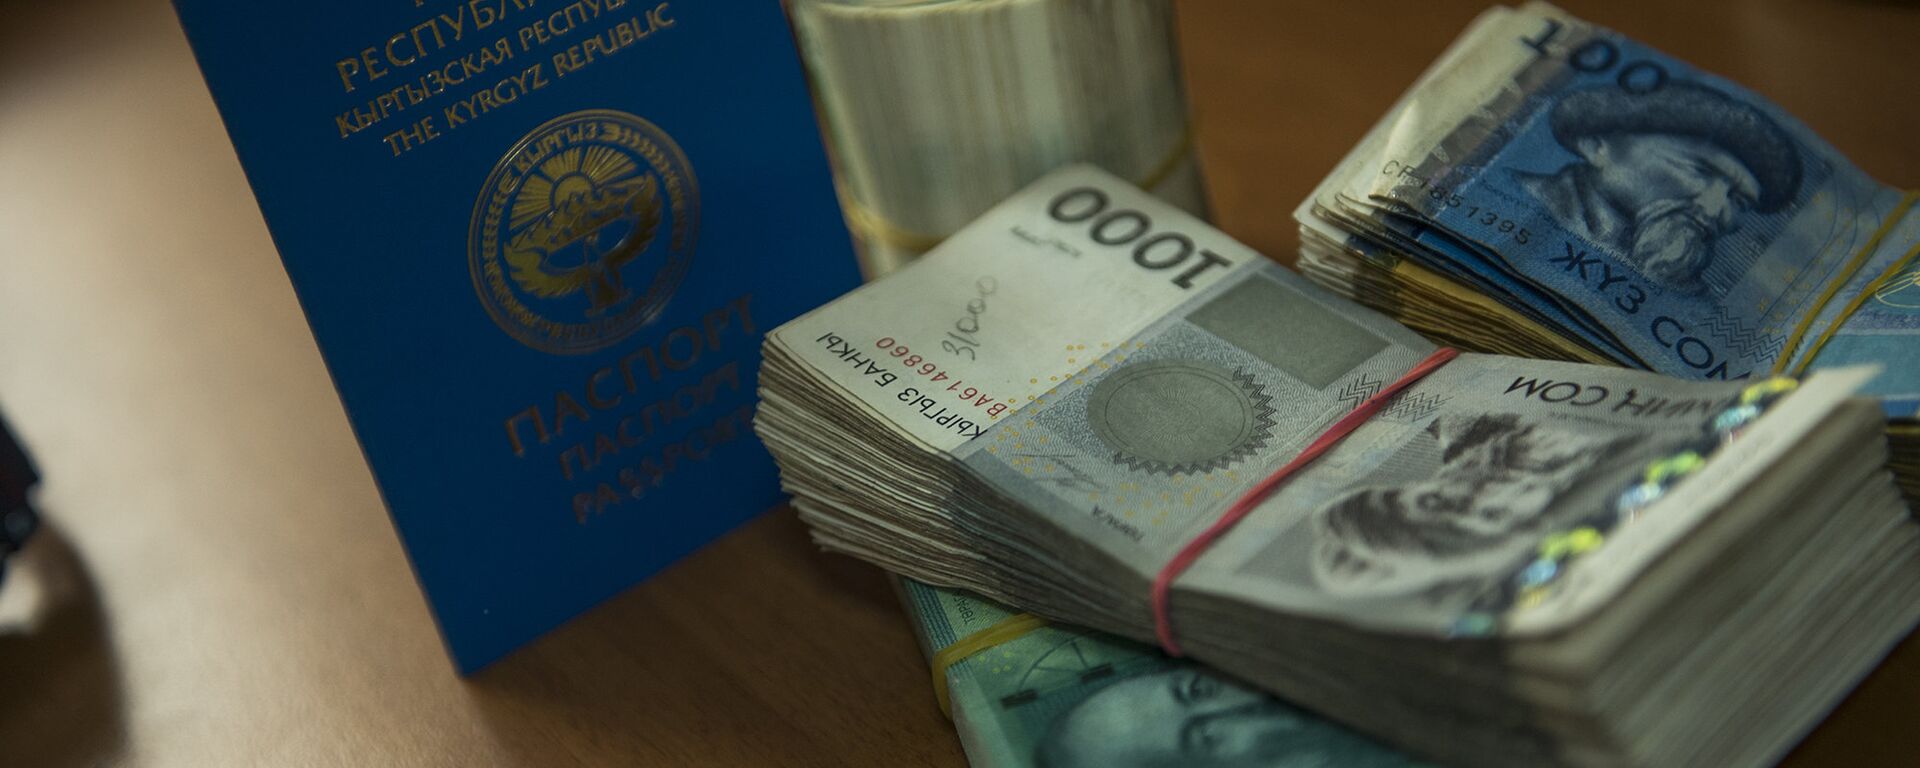 Паспорт гражданина Кыргызстана и пачка денег. Архивное фото - Sputnik Кыргызстан, 1920, 24.07.2021